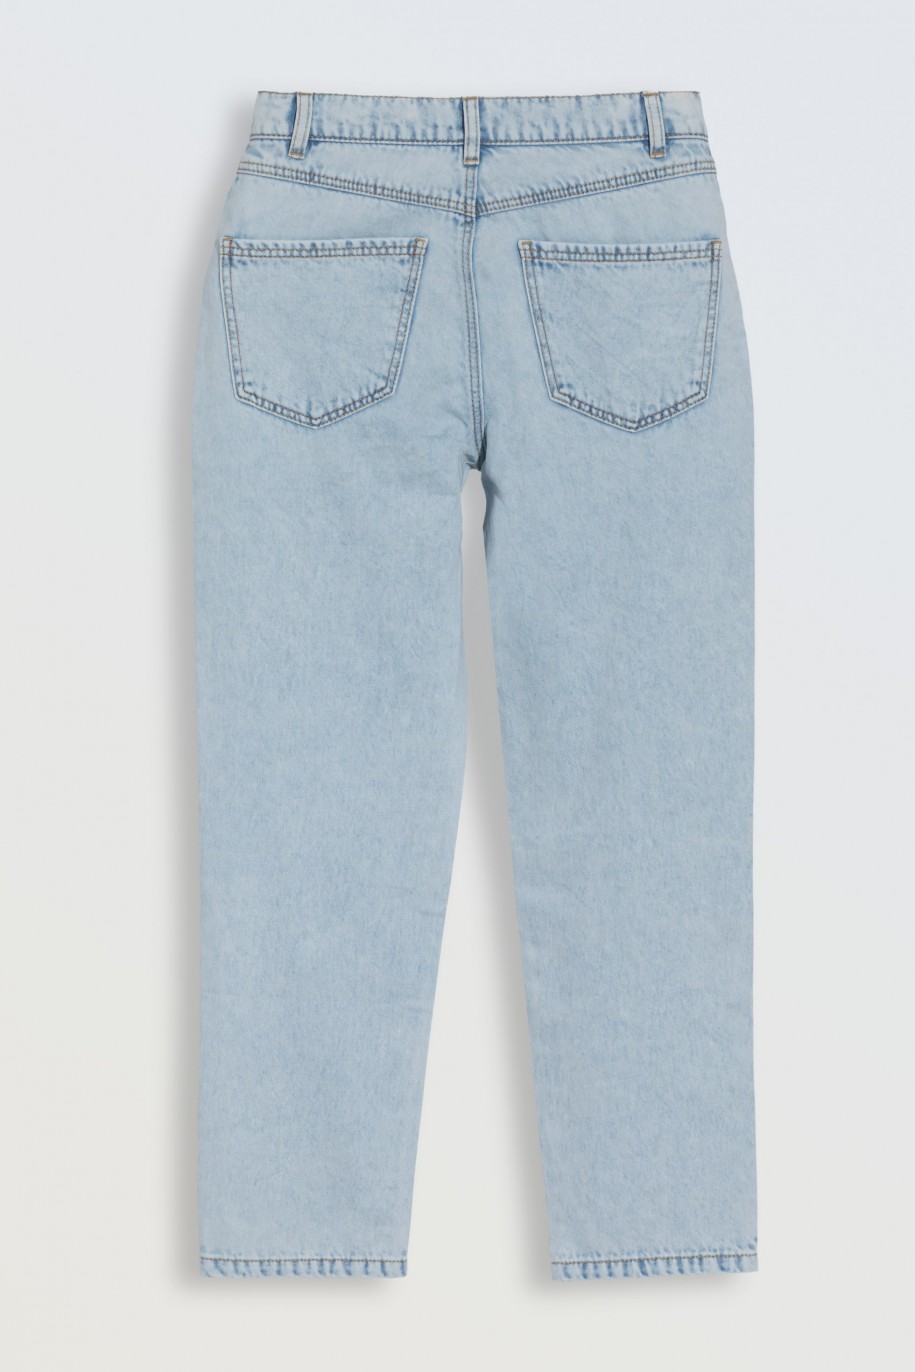 Jasnoniebieskie spodnie jeansowe typu MOM FIT - 46563